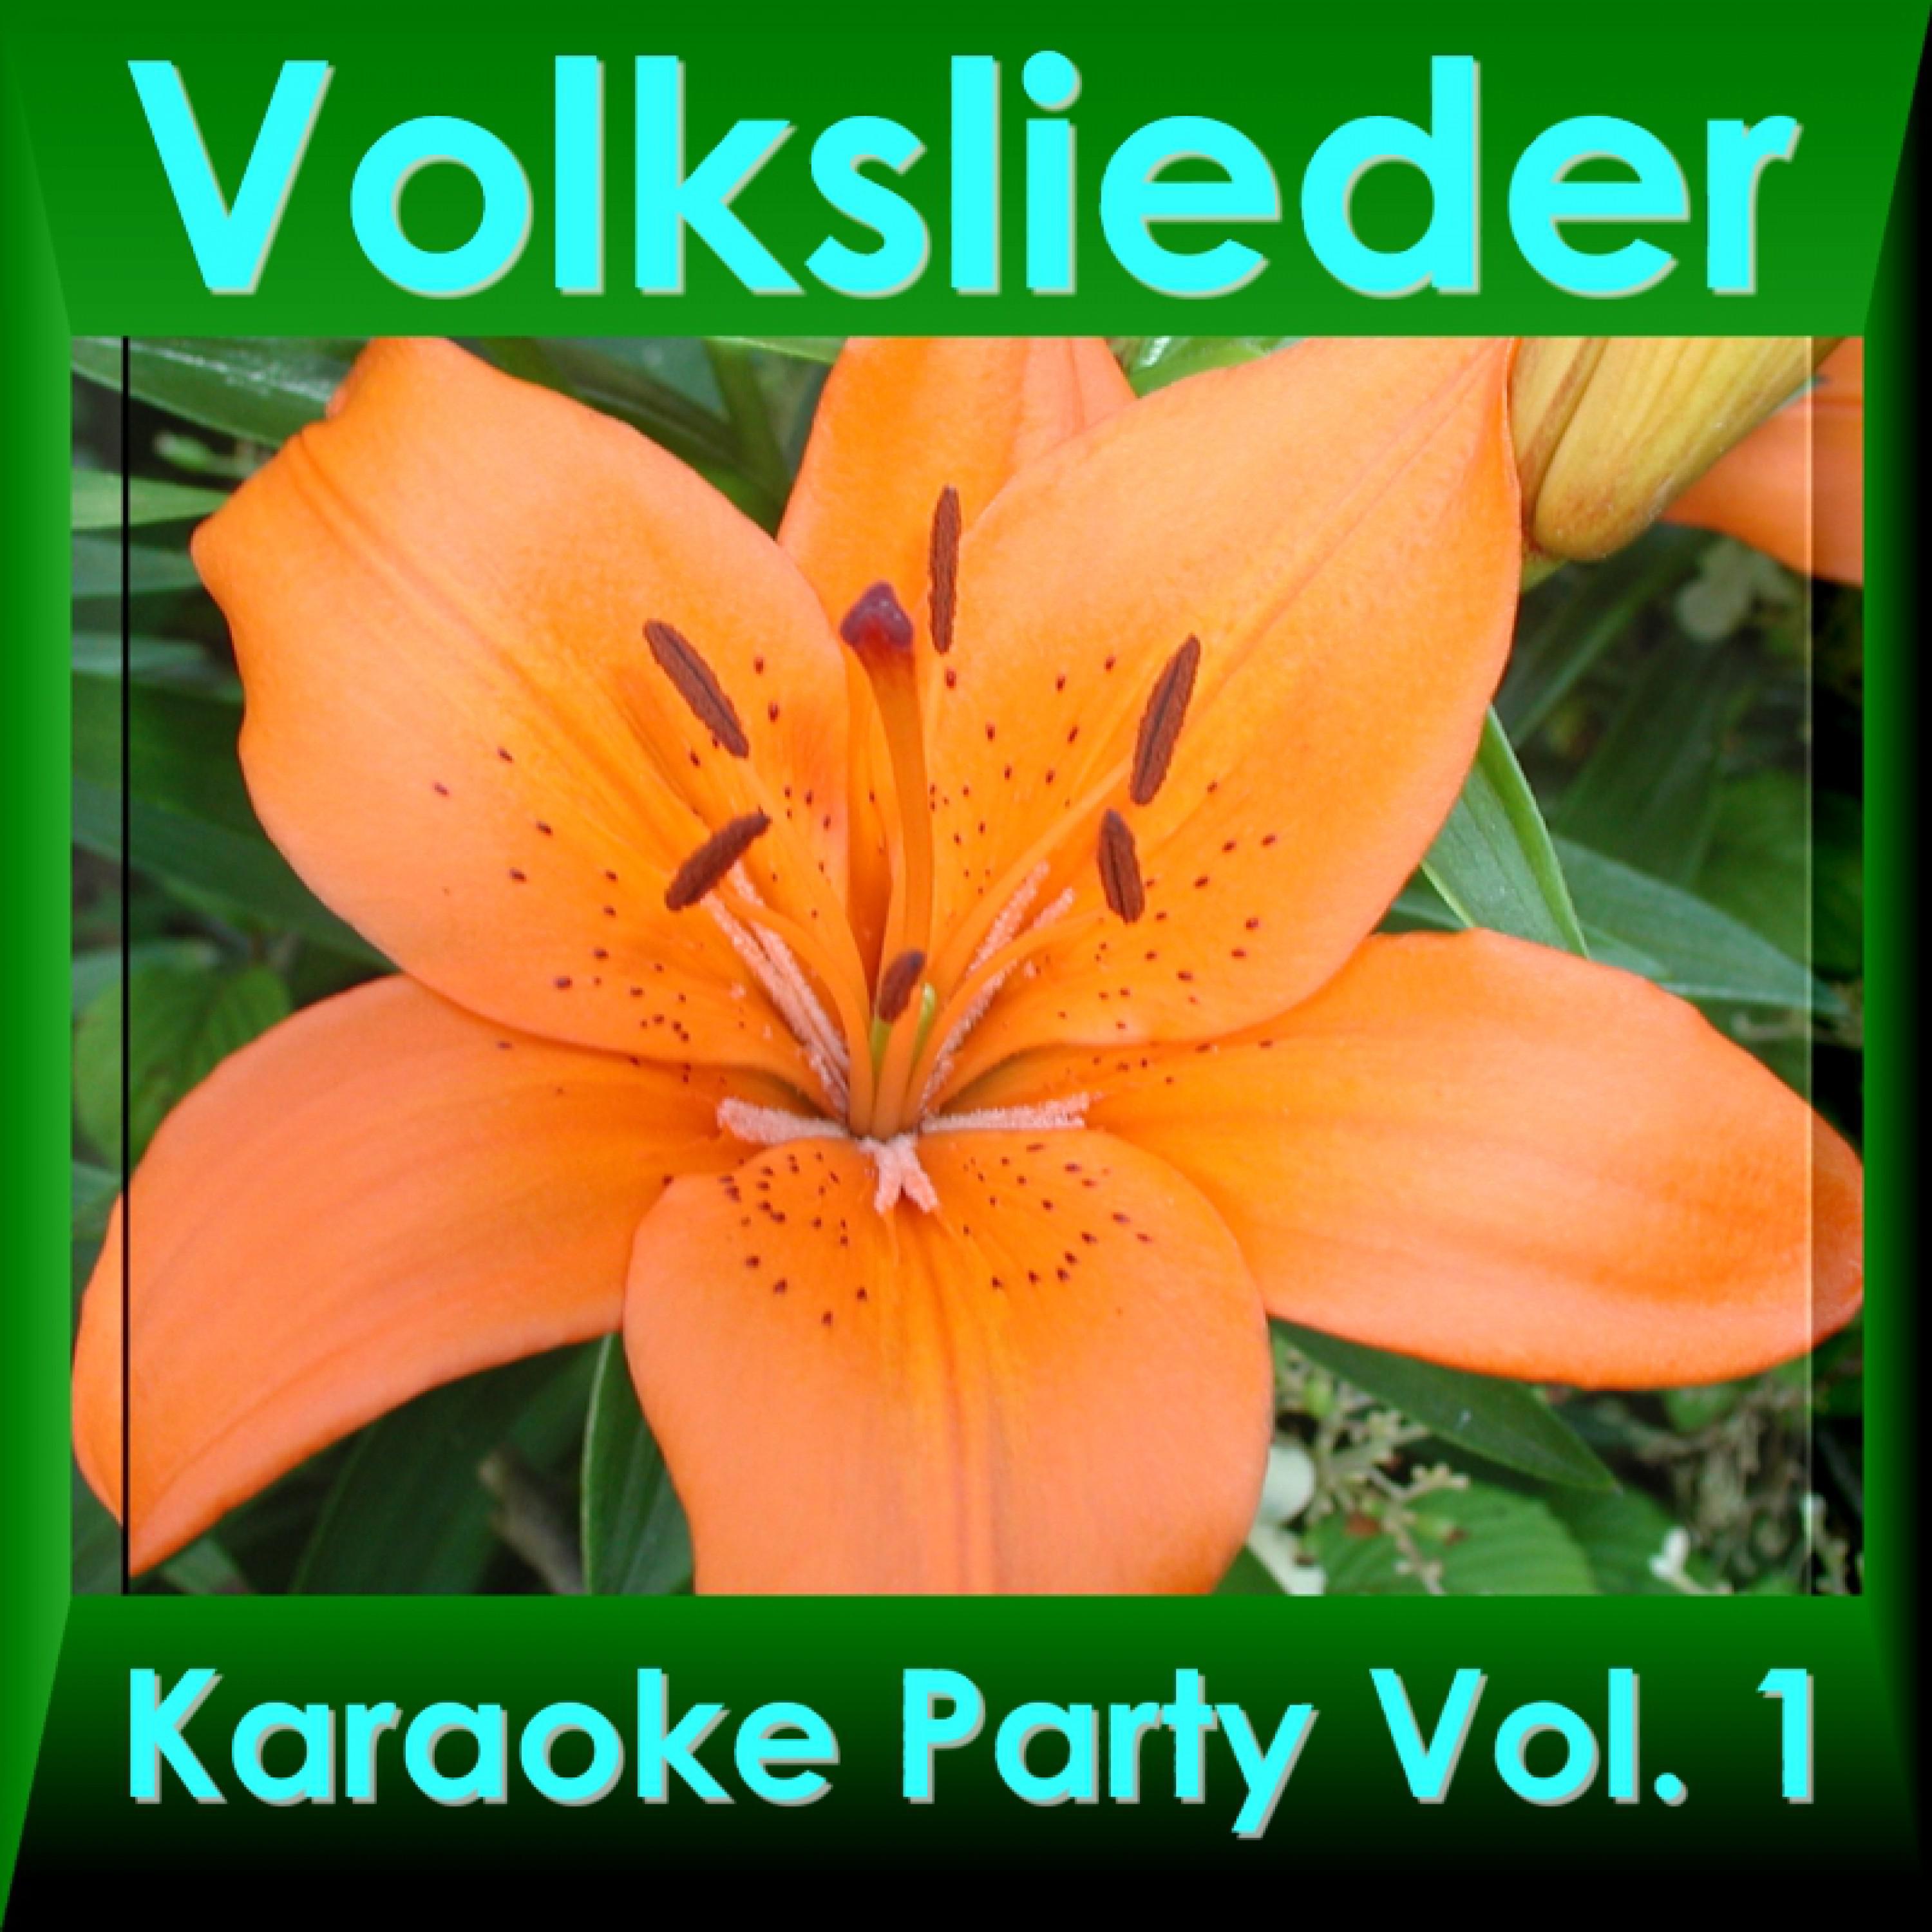 Volkslieder Karaoke Party Vol. 1